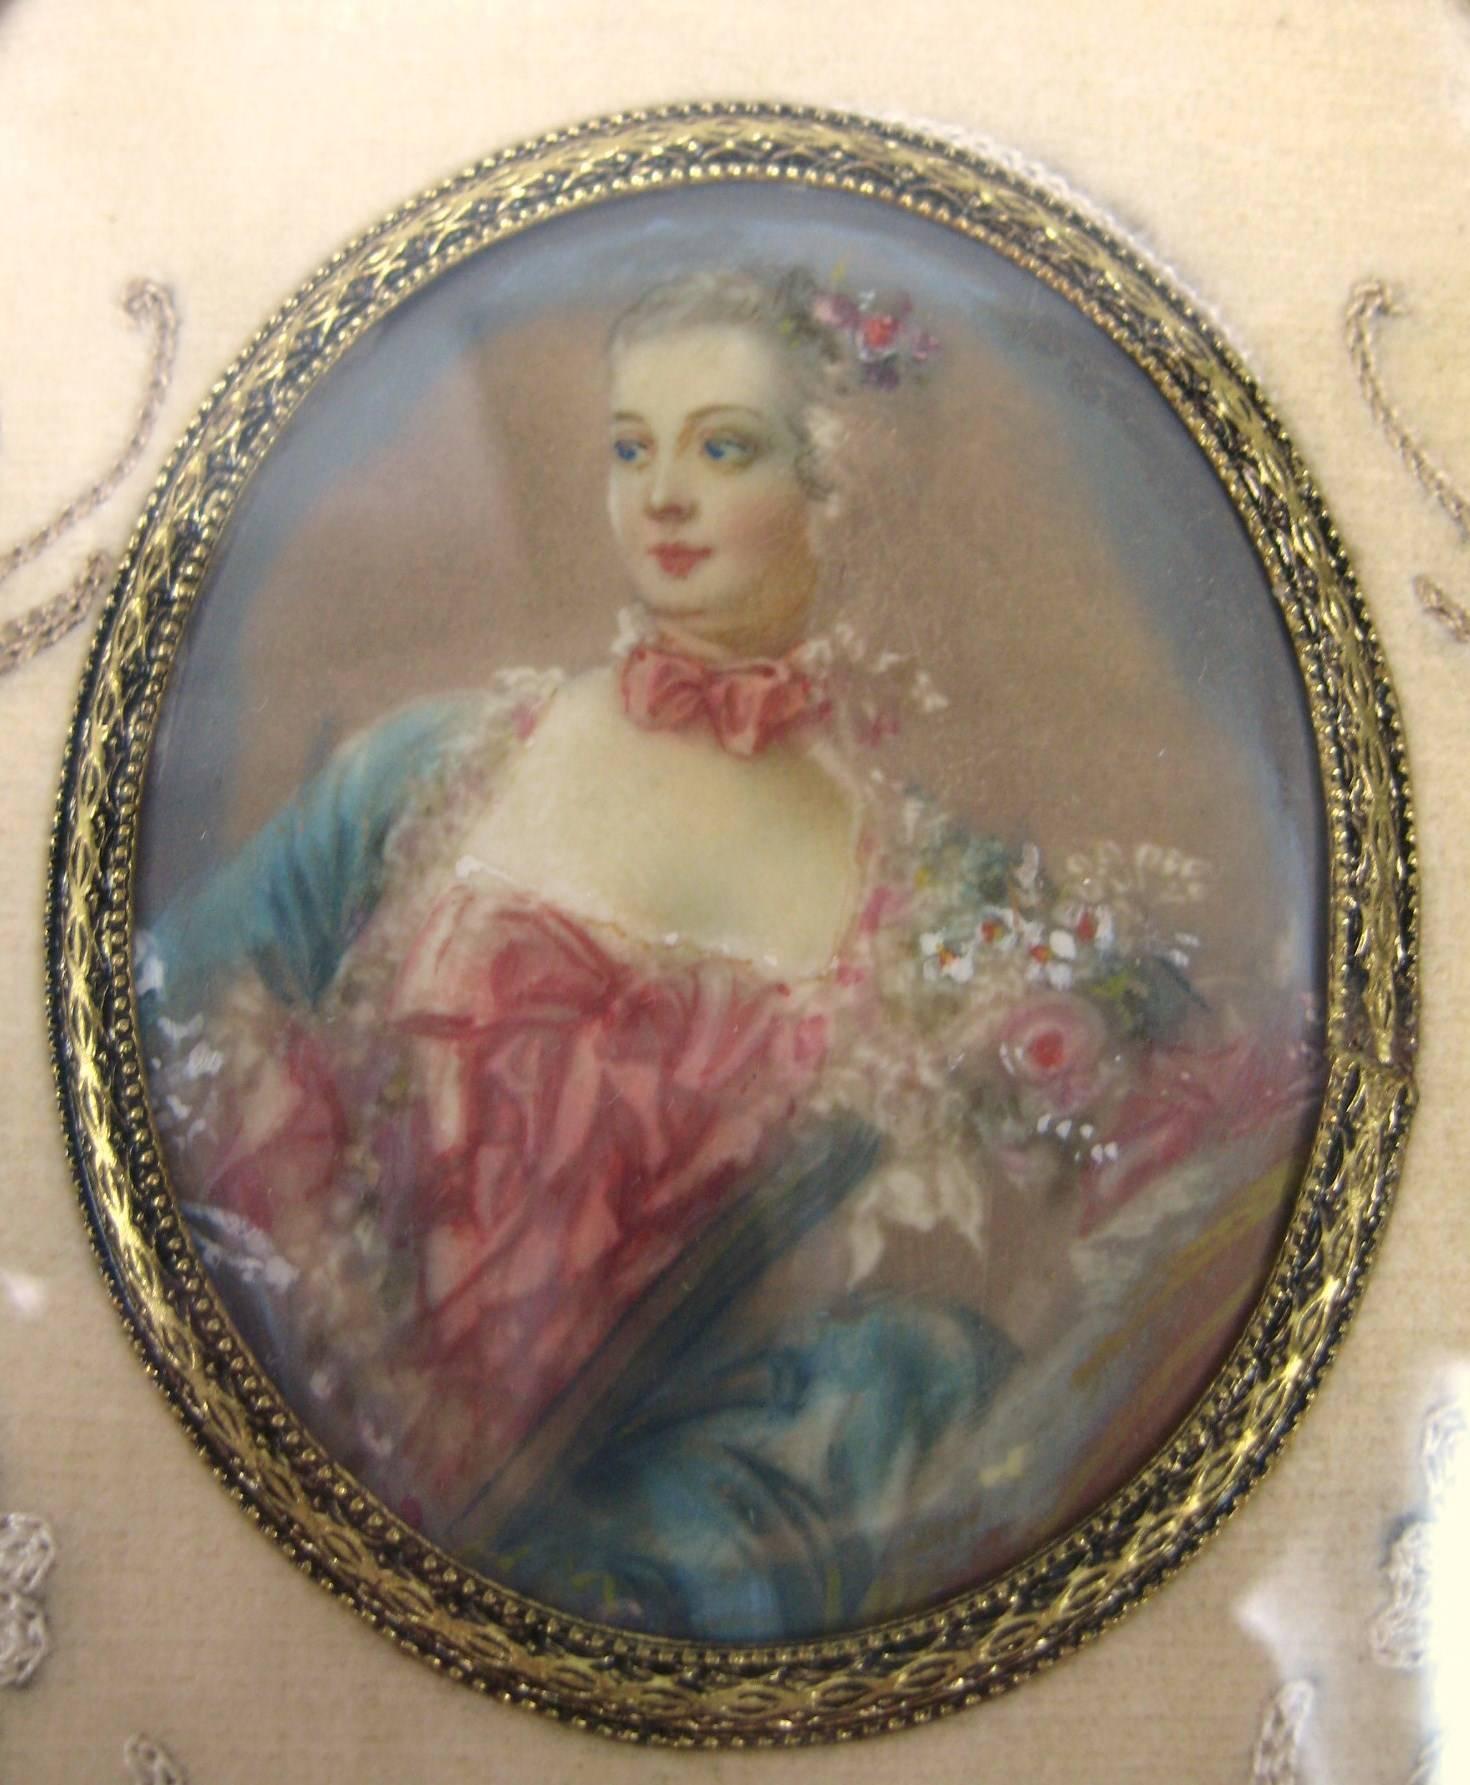 Handgemalte Miniatur aus dem frühen 19. Jahrhundert unter Glas. Fein gemalte Details an dieser schönen Dame. In einem ovalen Messingrahmen mit floraler Stickerei-Einfassung.
Gemälde misst 2,5 in x 2 in
Der Rahmen misst 6,25 x 3,75 Zoll.